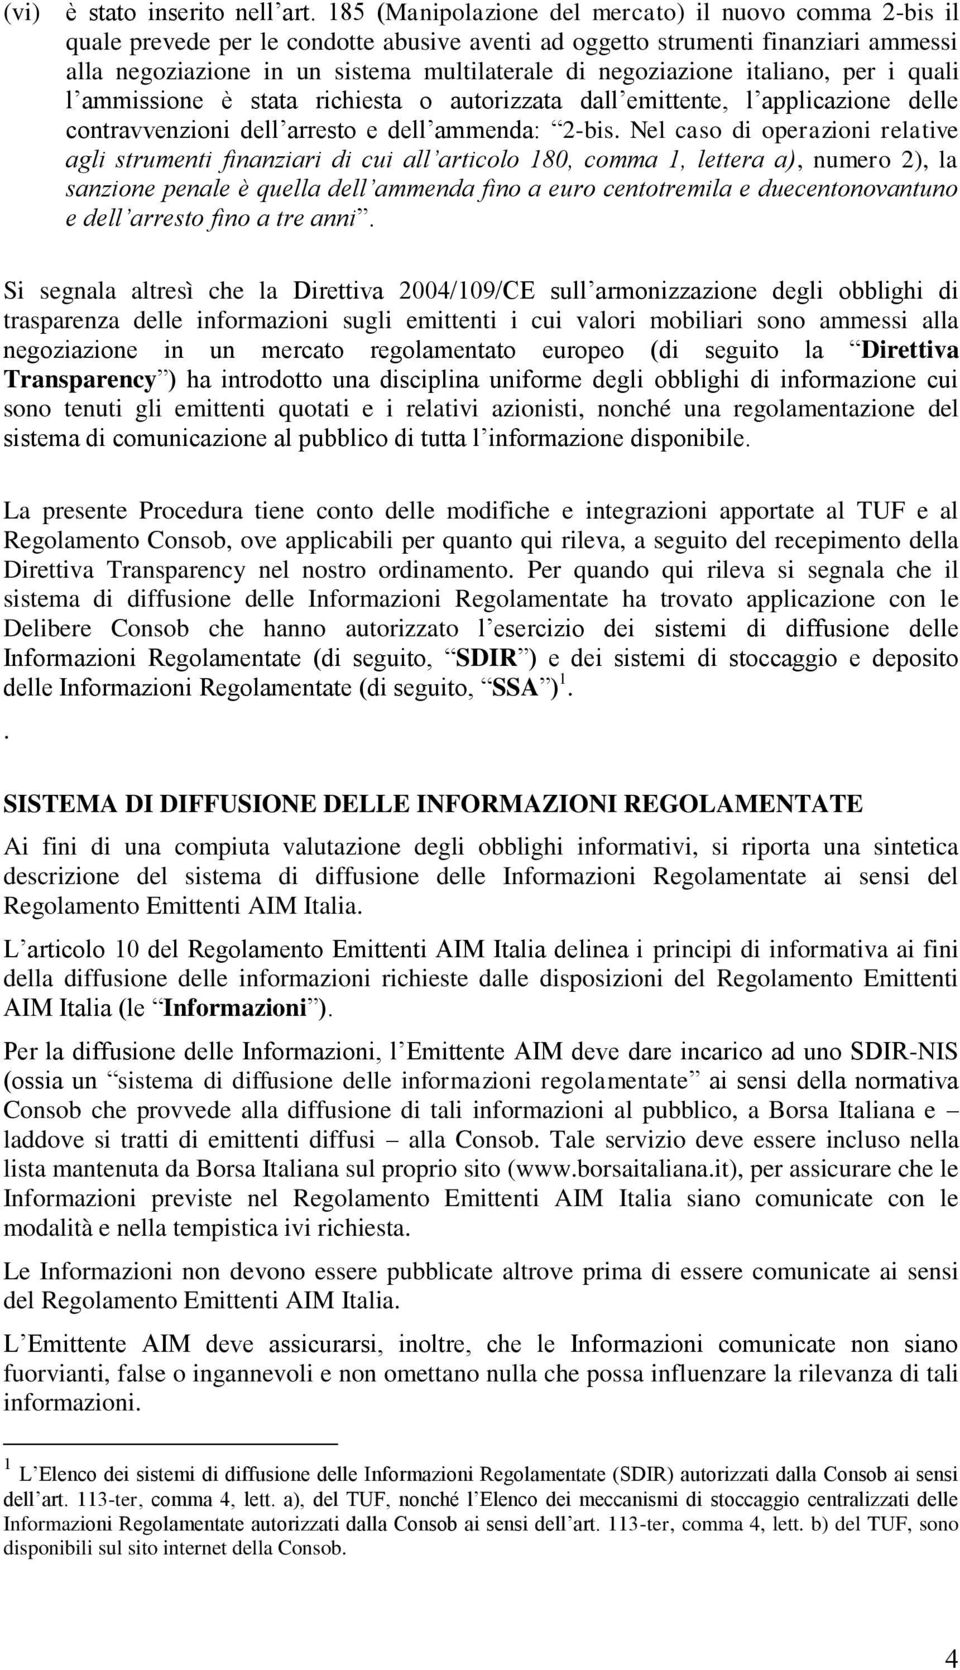 negoziazione italiano, per i quali l ammissione è stata richiesta o autorizzata dall emittente, l applicazione delle contravvenzioni dell arresto e dell ammenda: 2-bis.